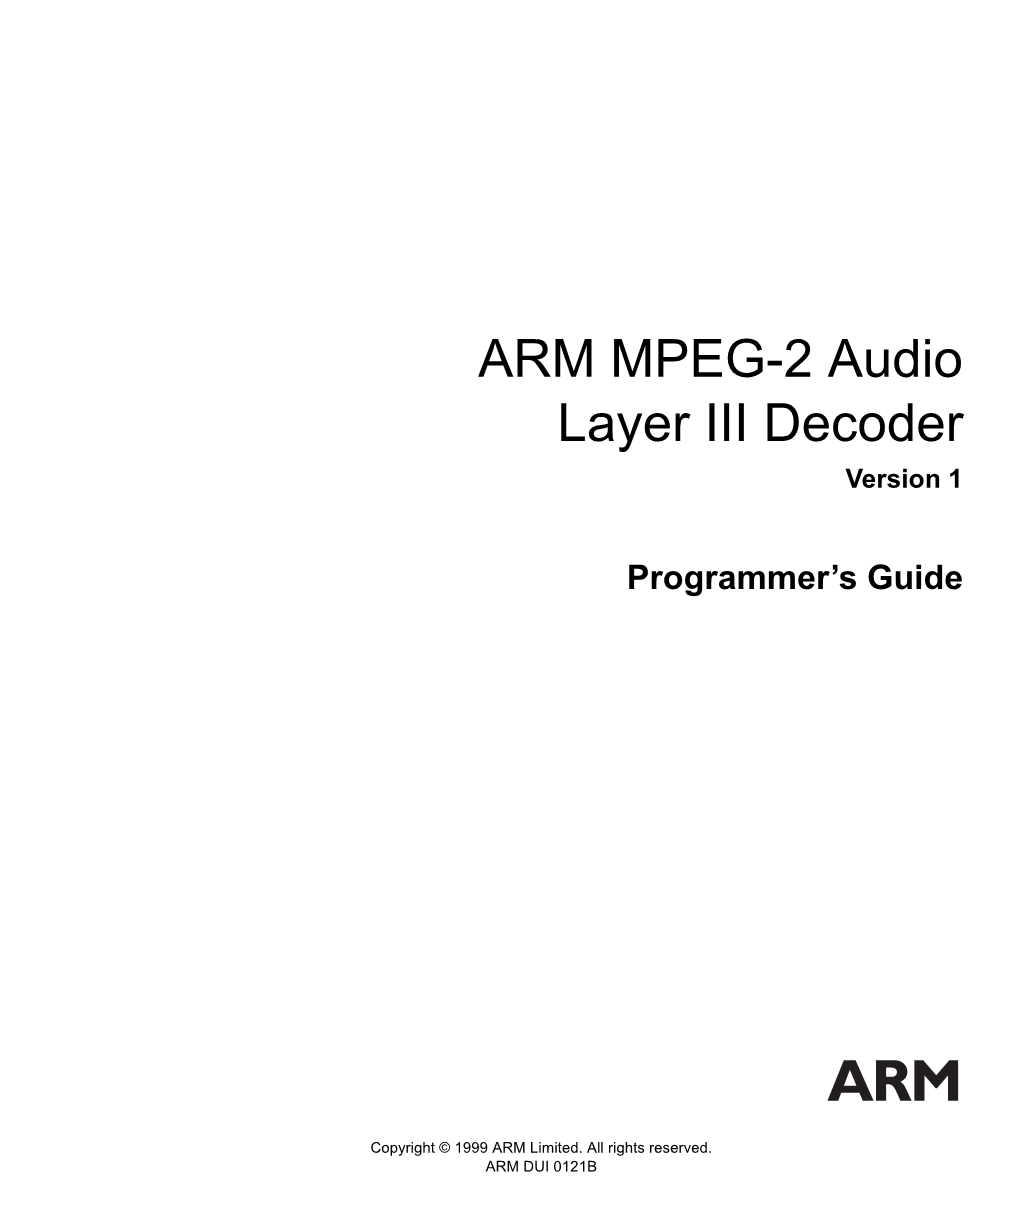 ARM MPEG-2 Audio Layer III Decoder Version 1